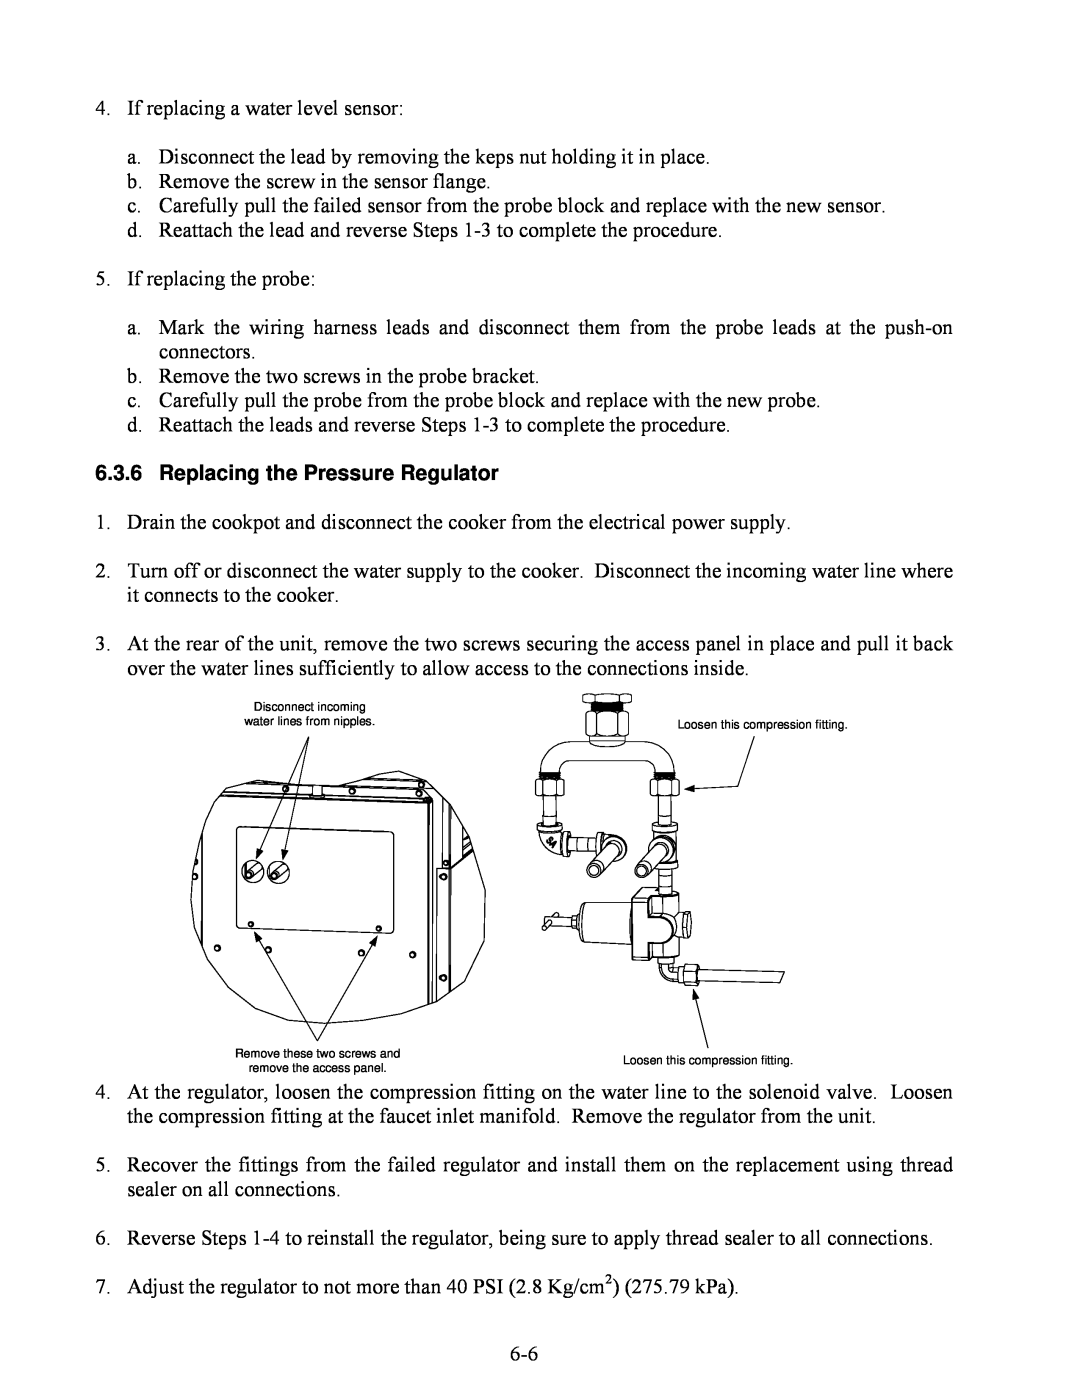 Frymaster 8BC, 8SMS, 8C manual Replacing the Pressure Regulator 